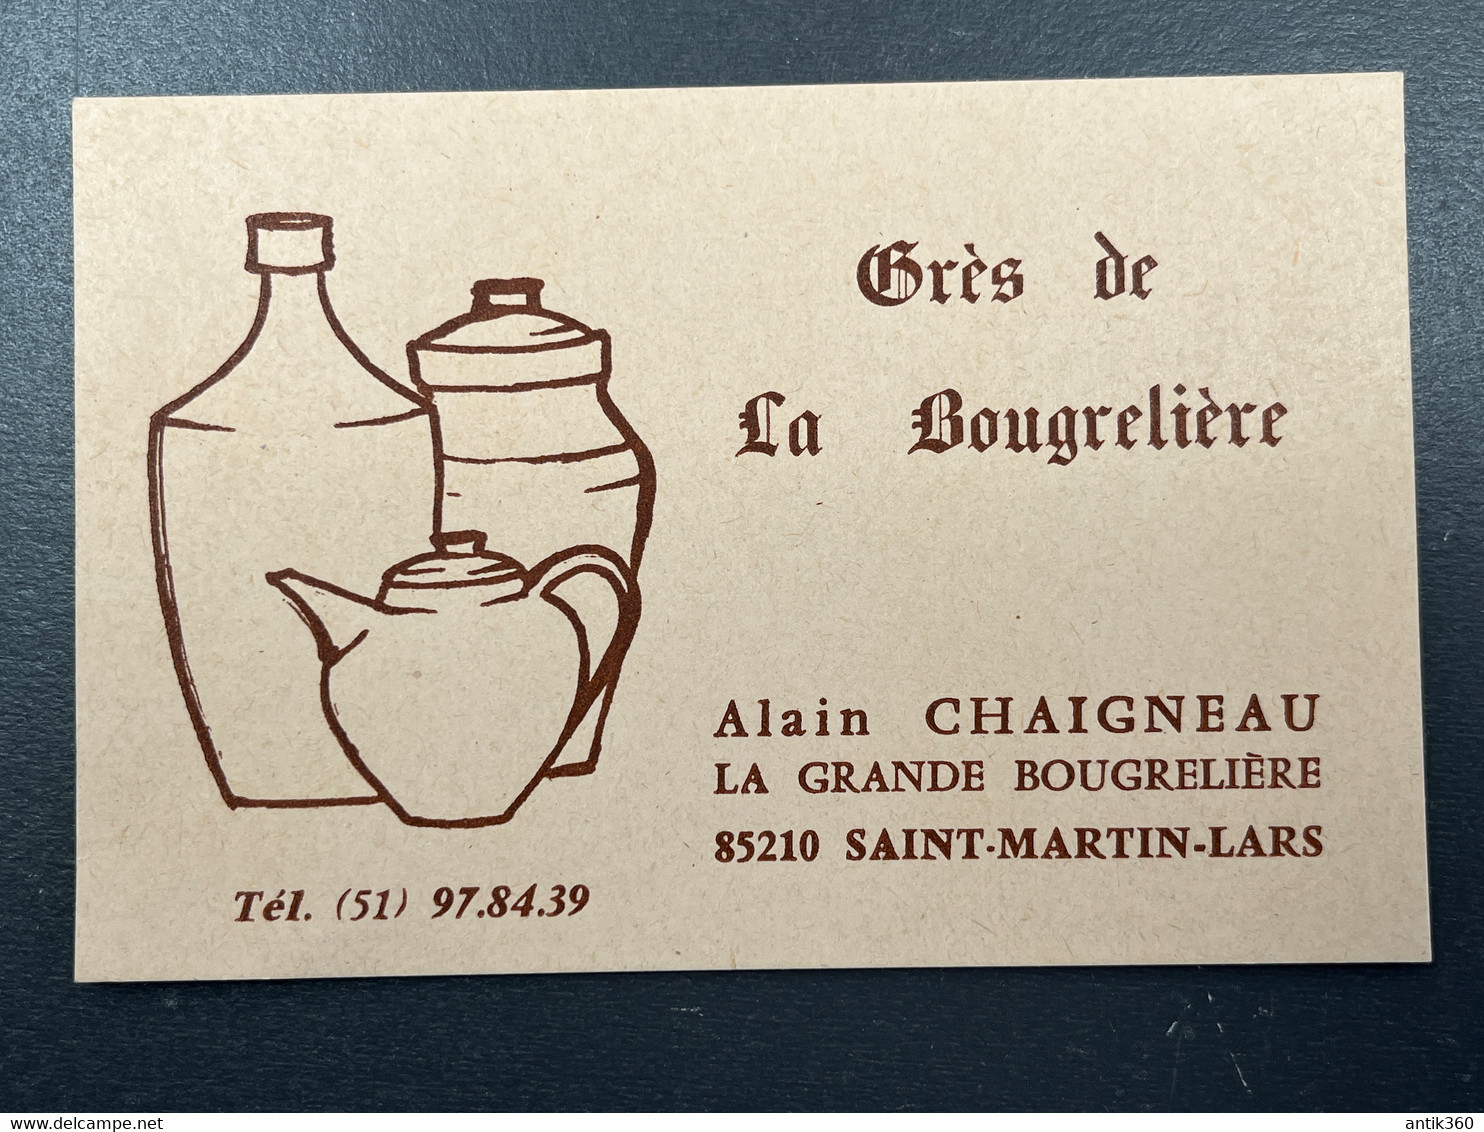 Carte De Visite Ancienne Grès De La Bougrelière Alain Chaigneau 85 Saint Martin Lars Vendée Céramique Poterie - Visitenkarten